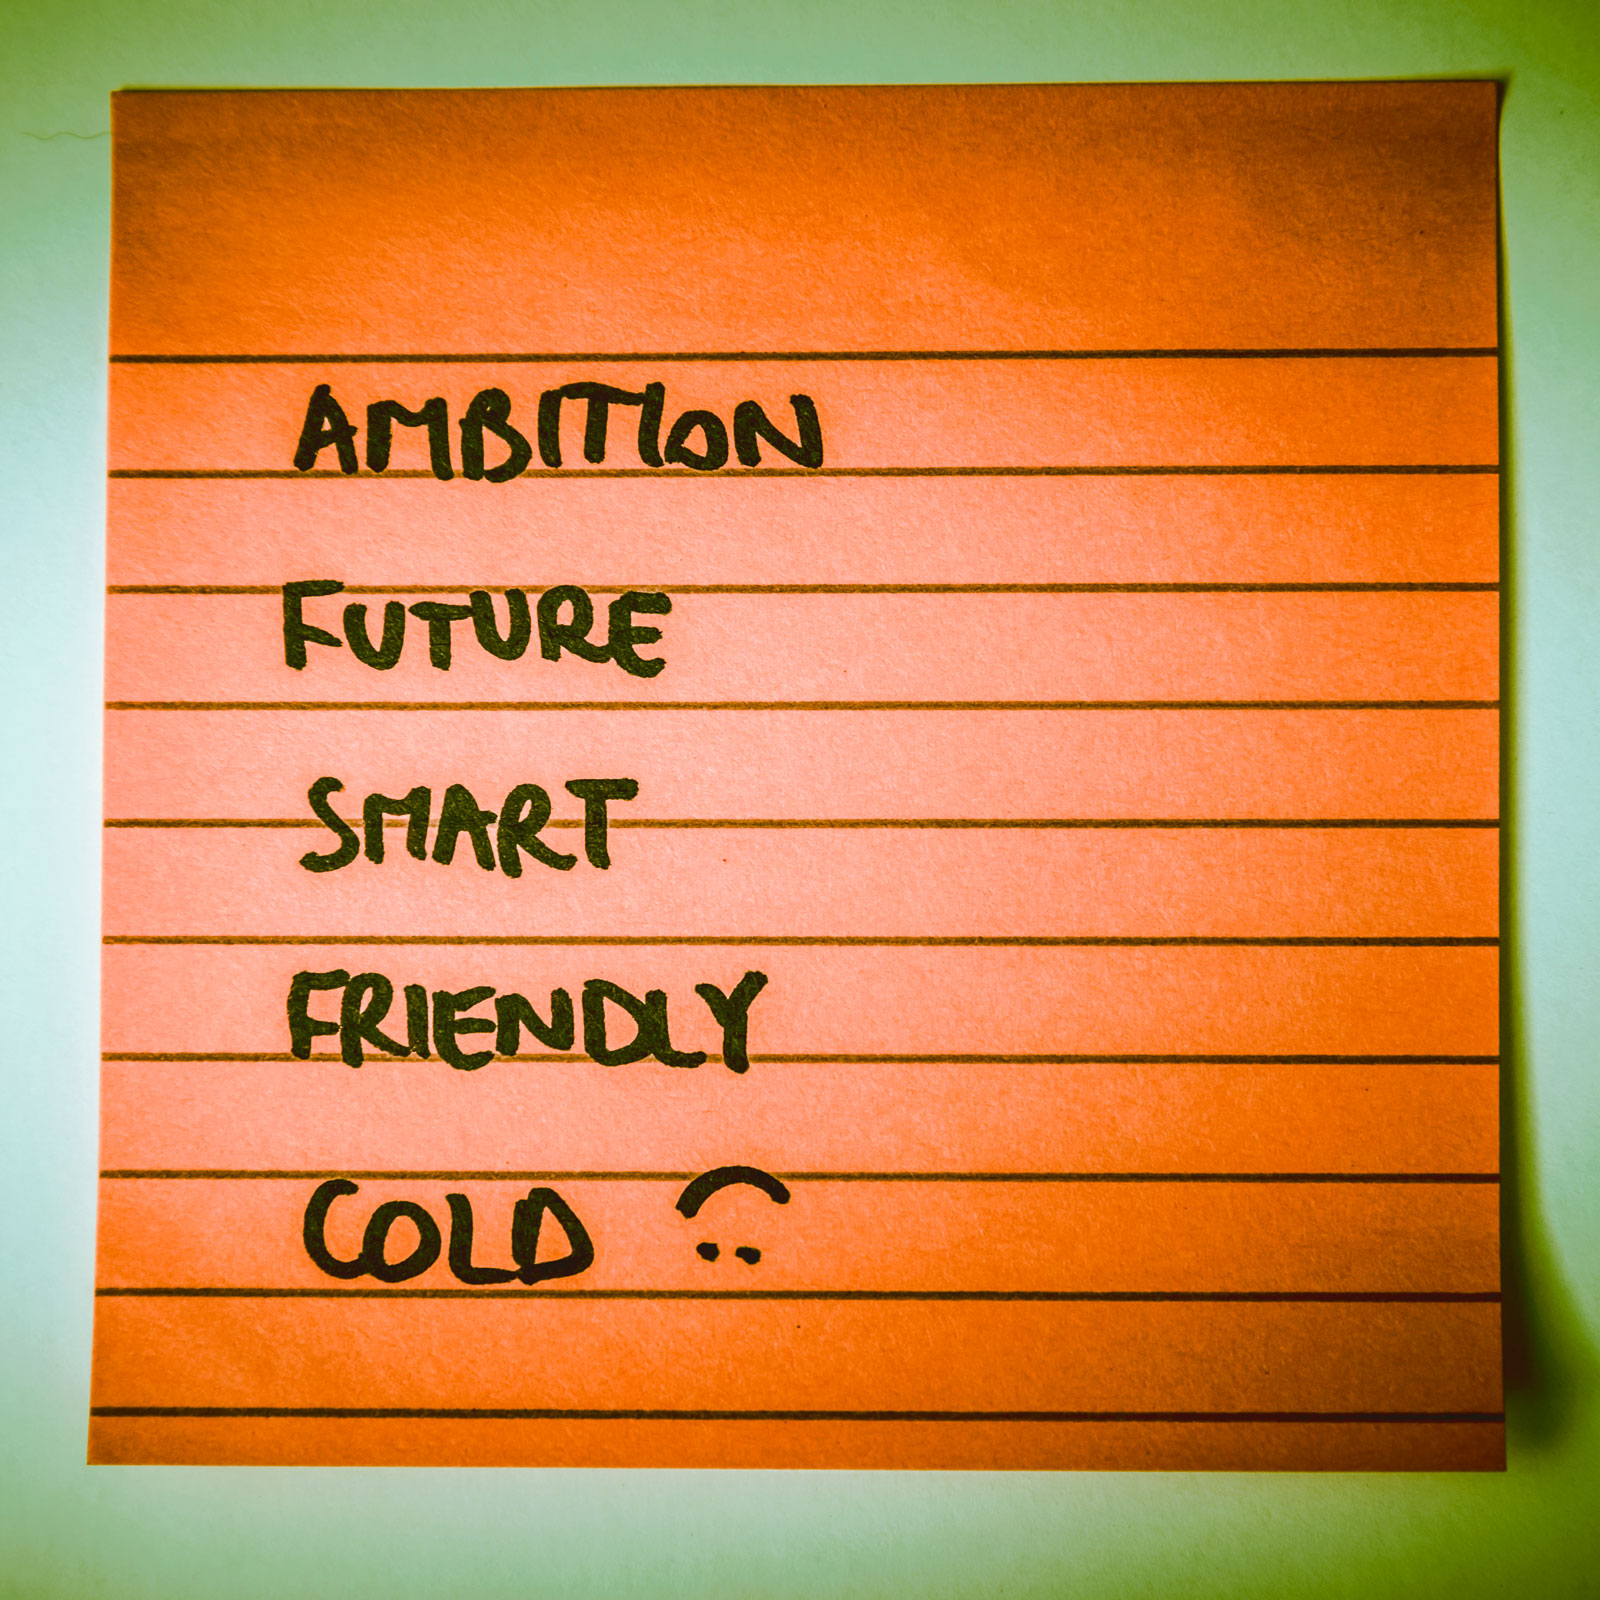 Ambition future smart friendly cold